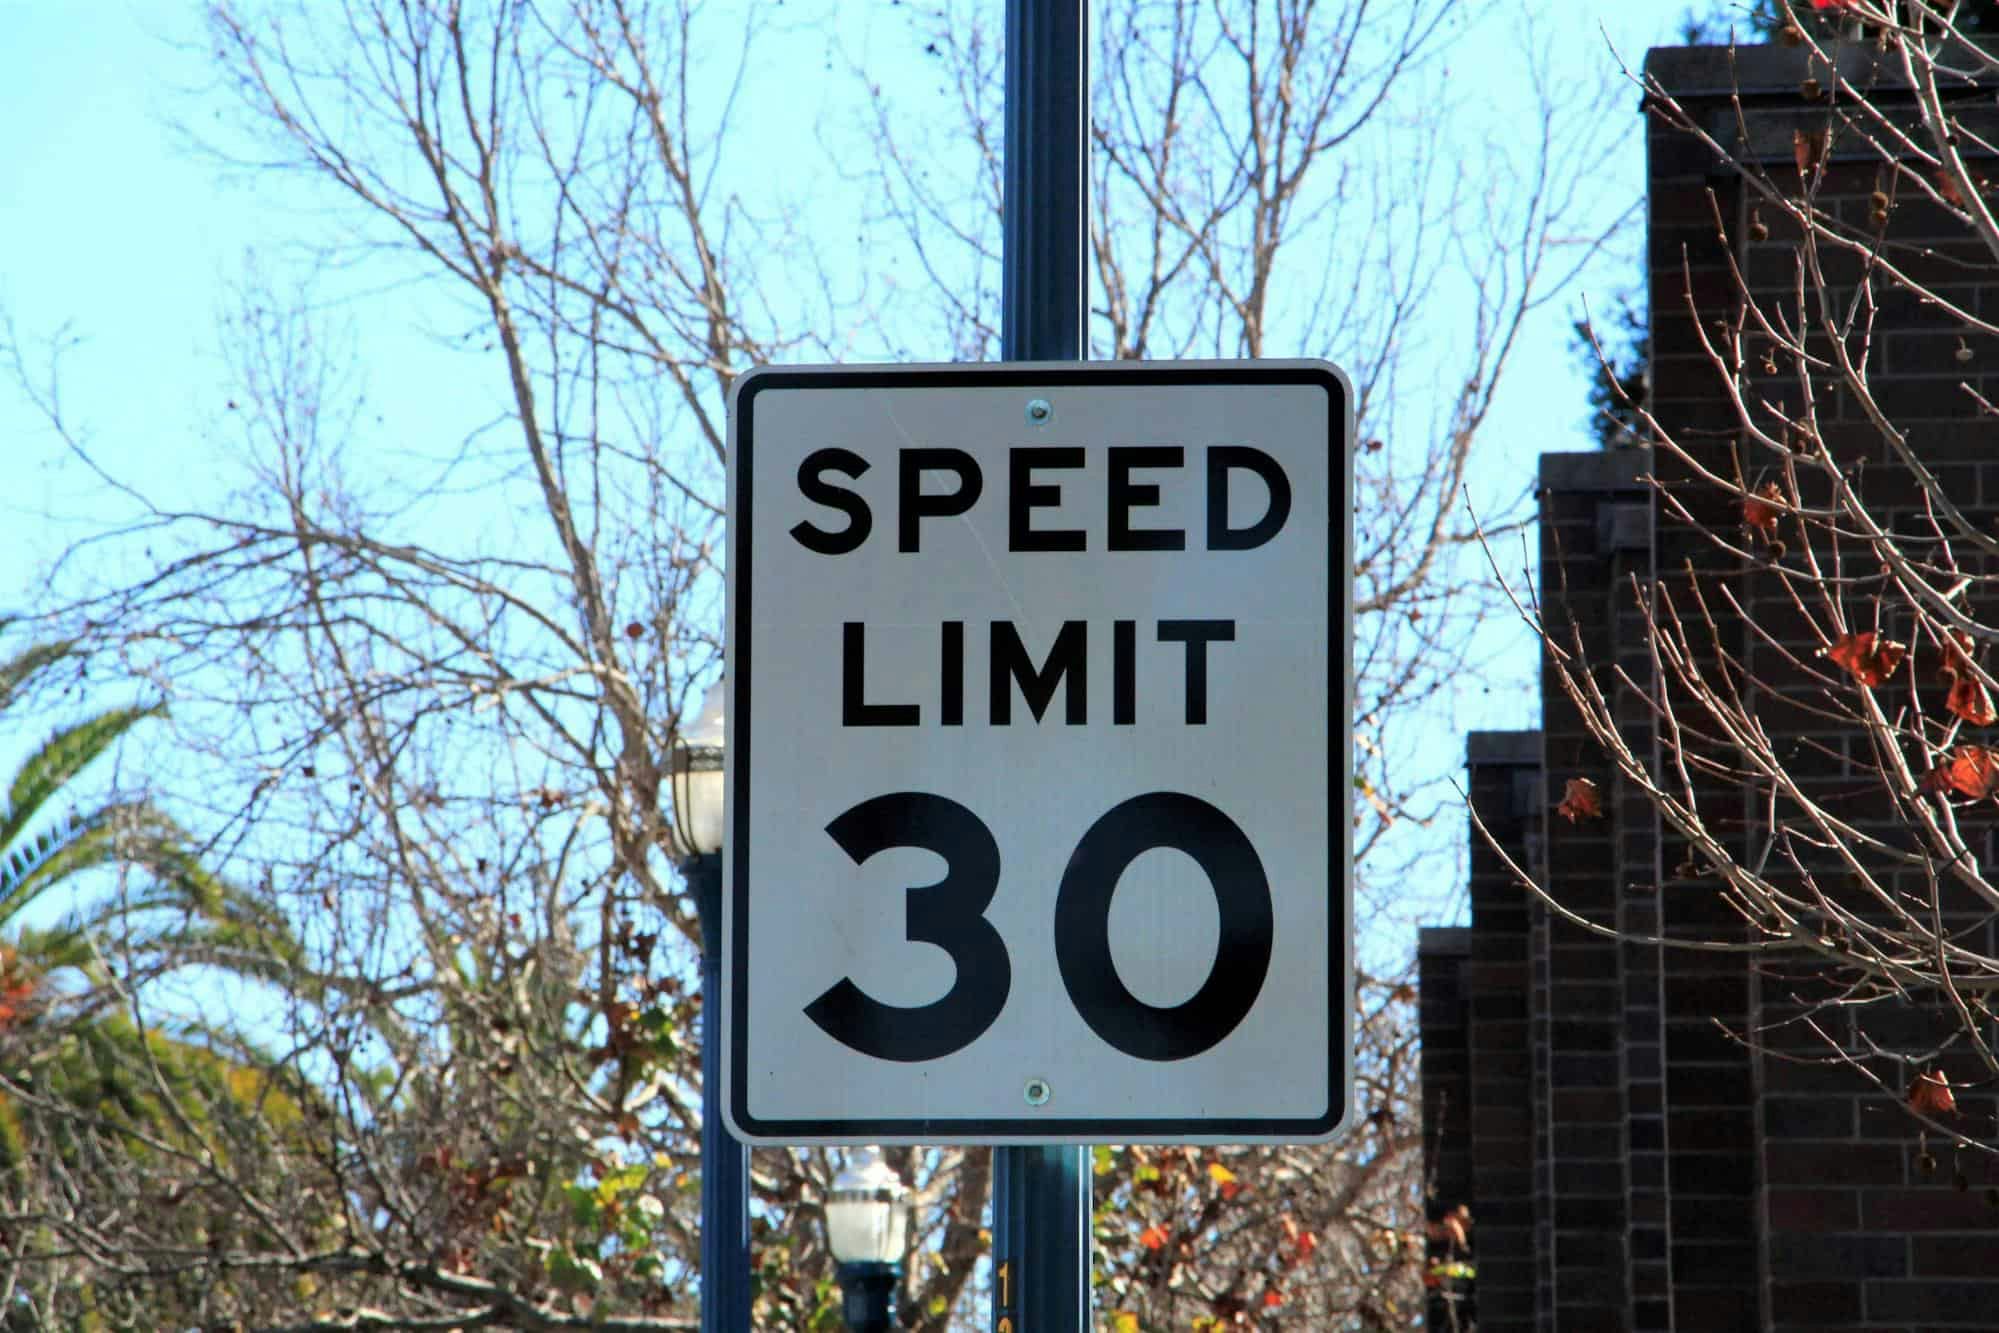 Speed limit 30 mph